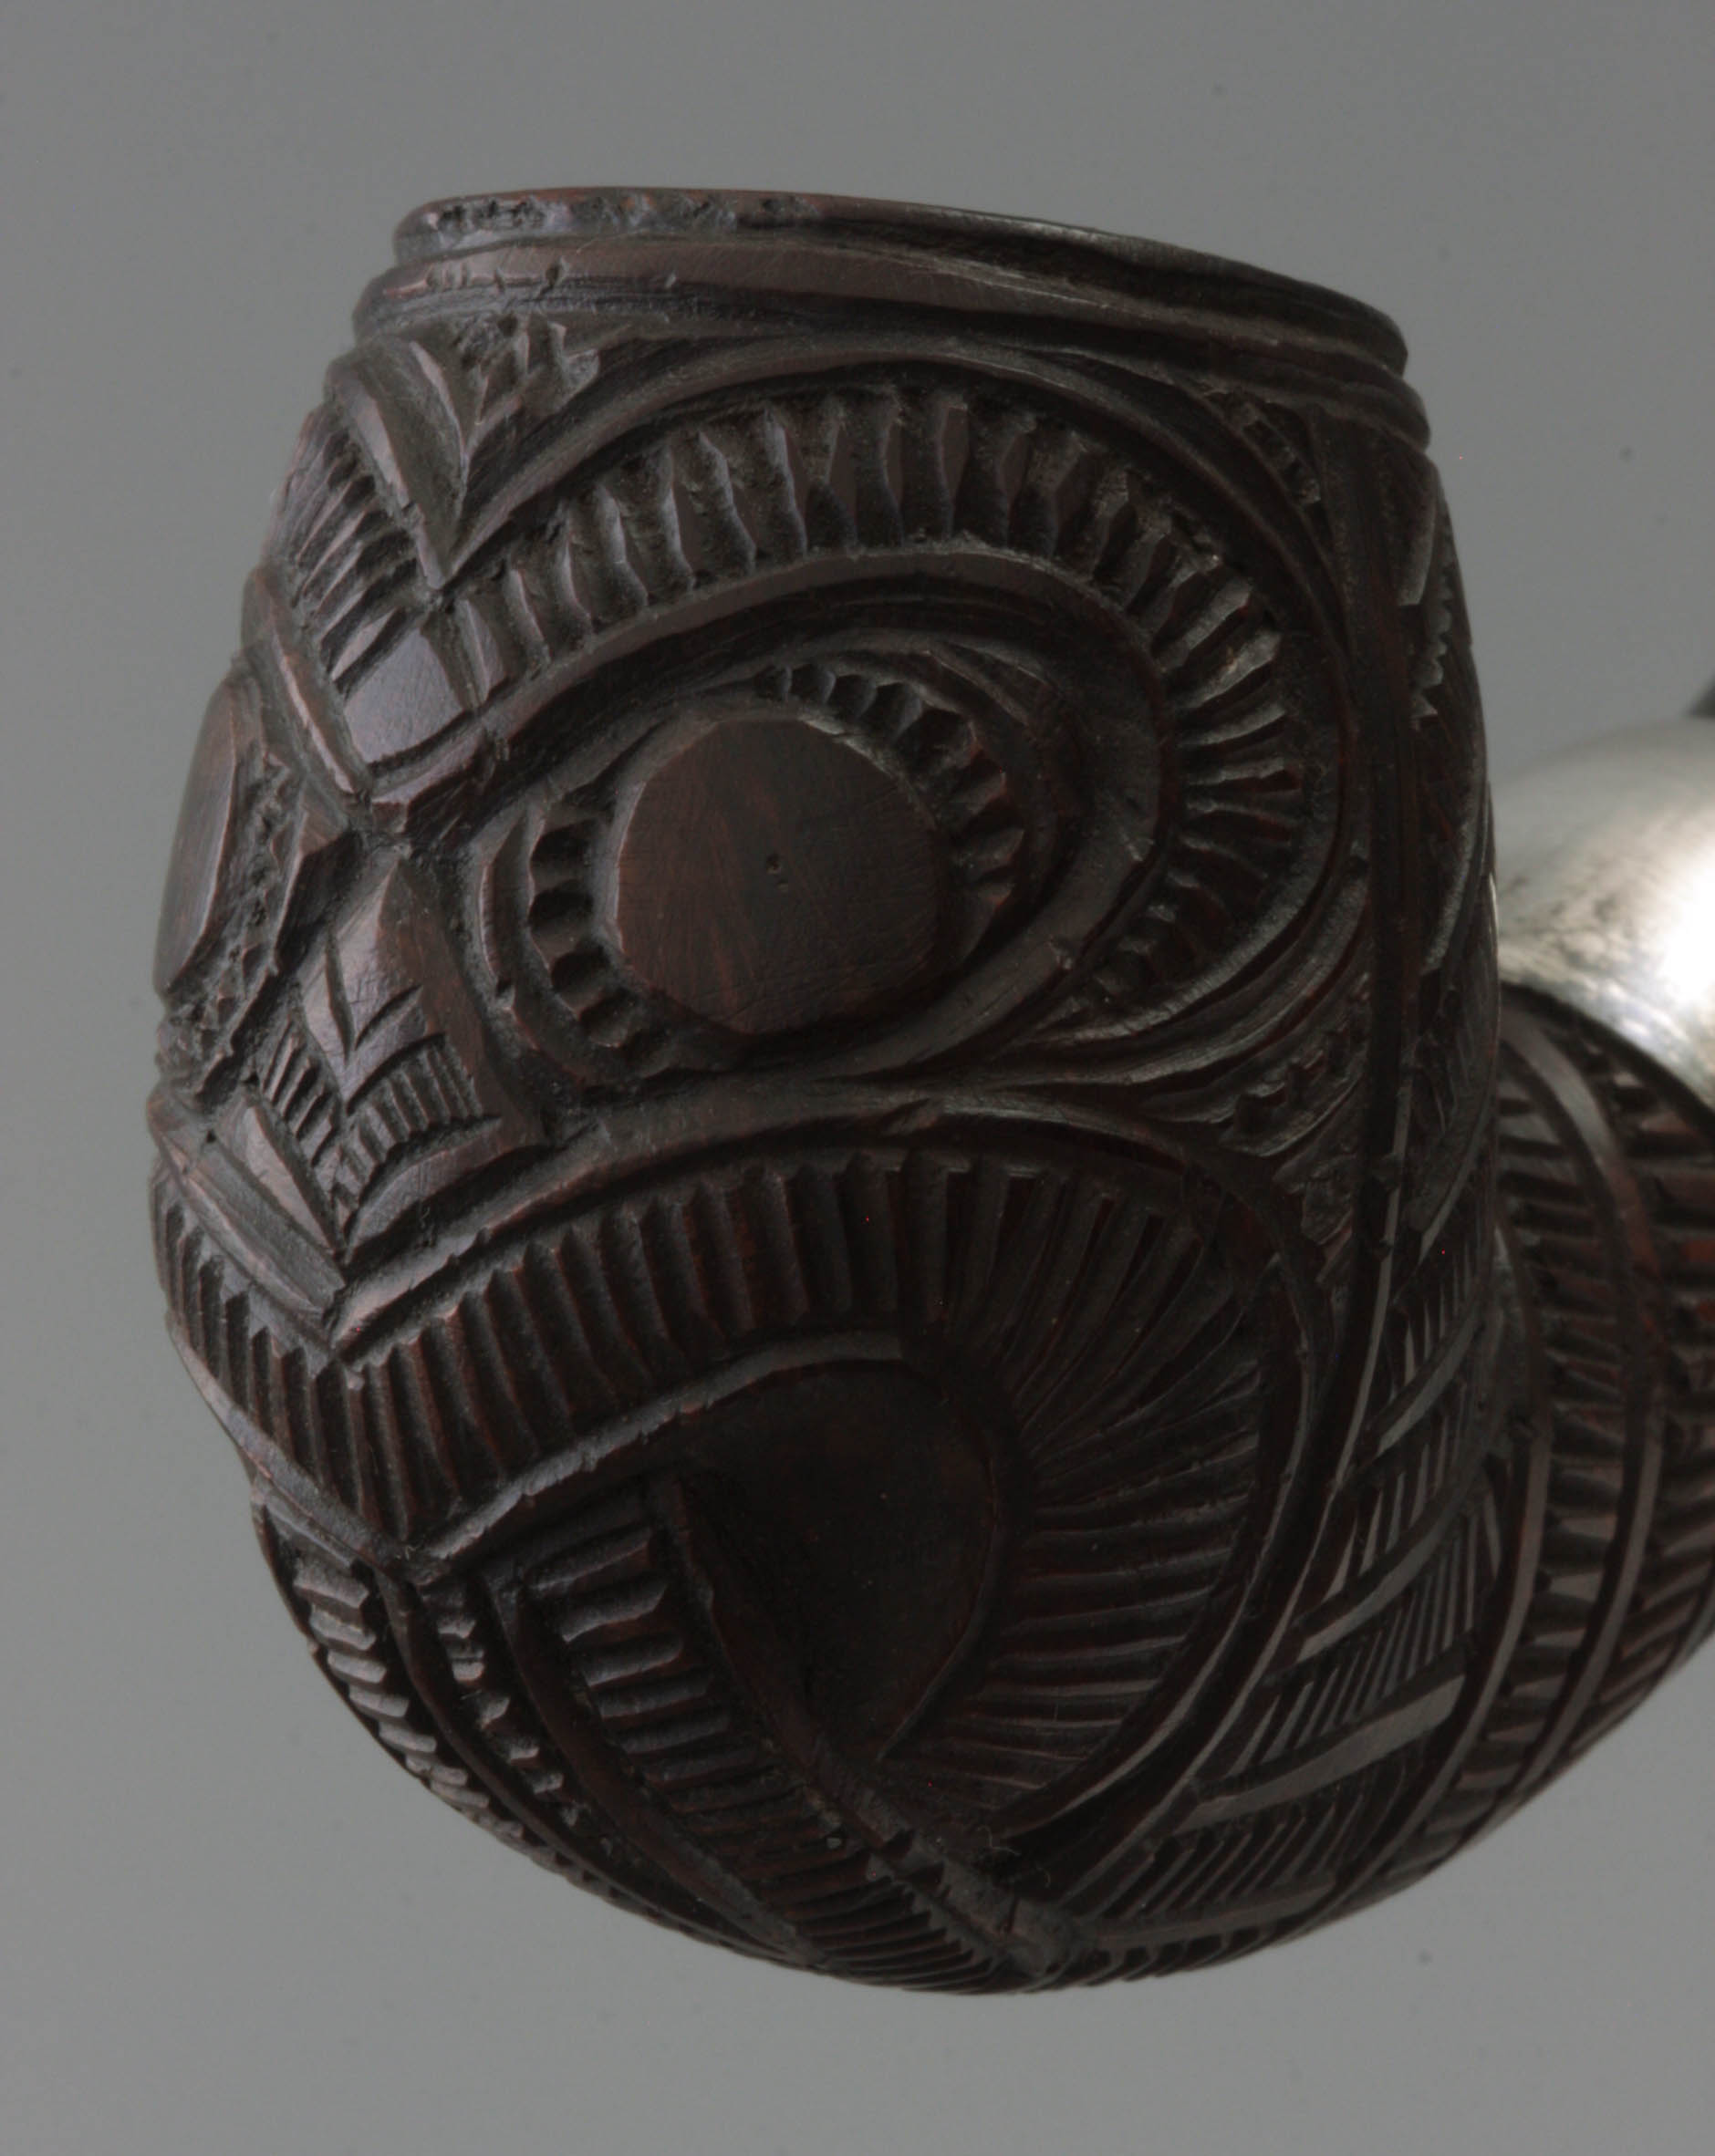 04-20.277-new-zealand-maori-bbb-mask-6